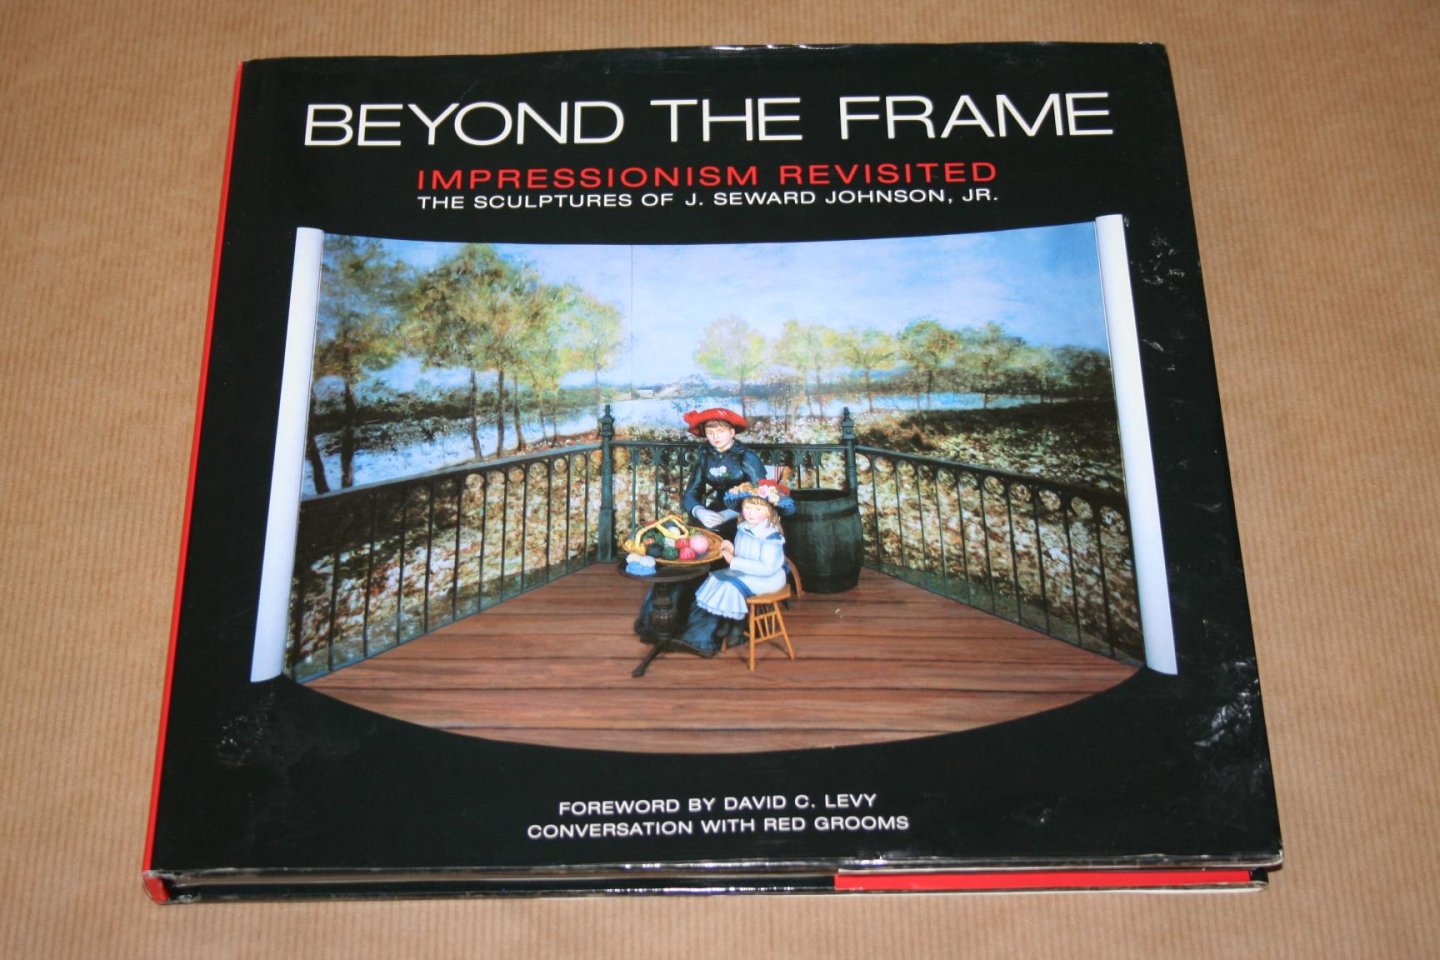  - Beyond the frame - Impressionism revisited - Sculptures of J. Seward Johnson jr